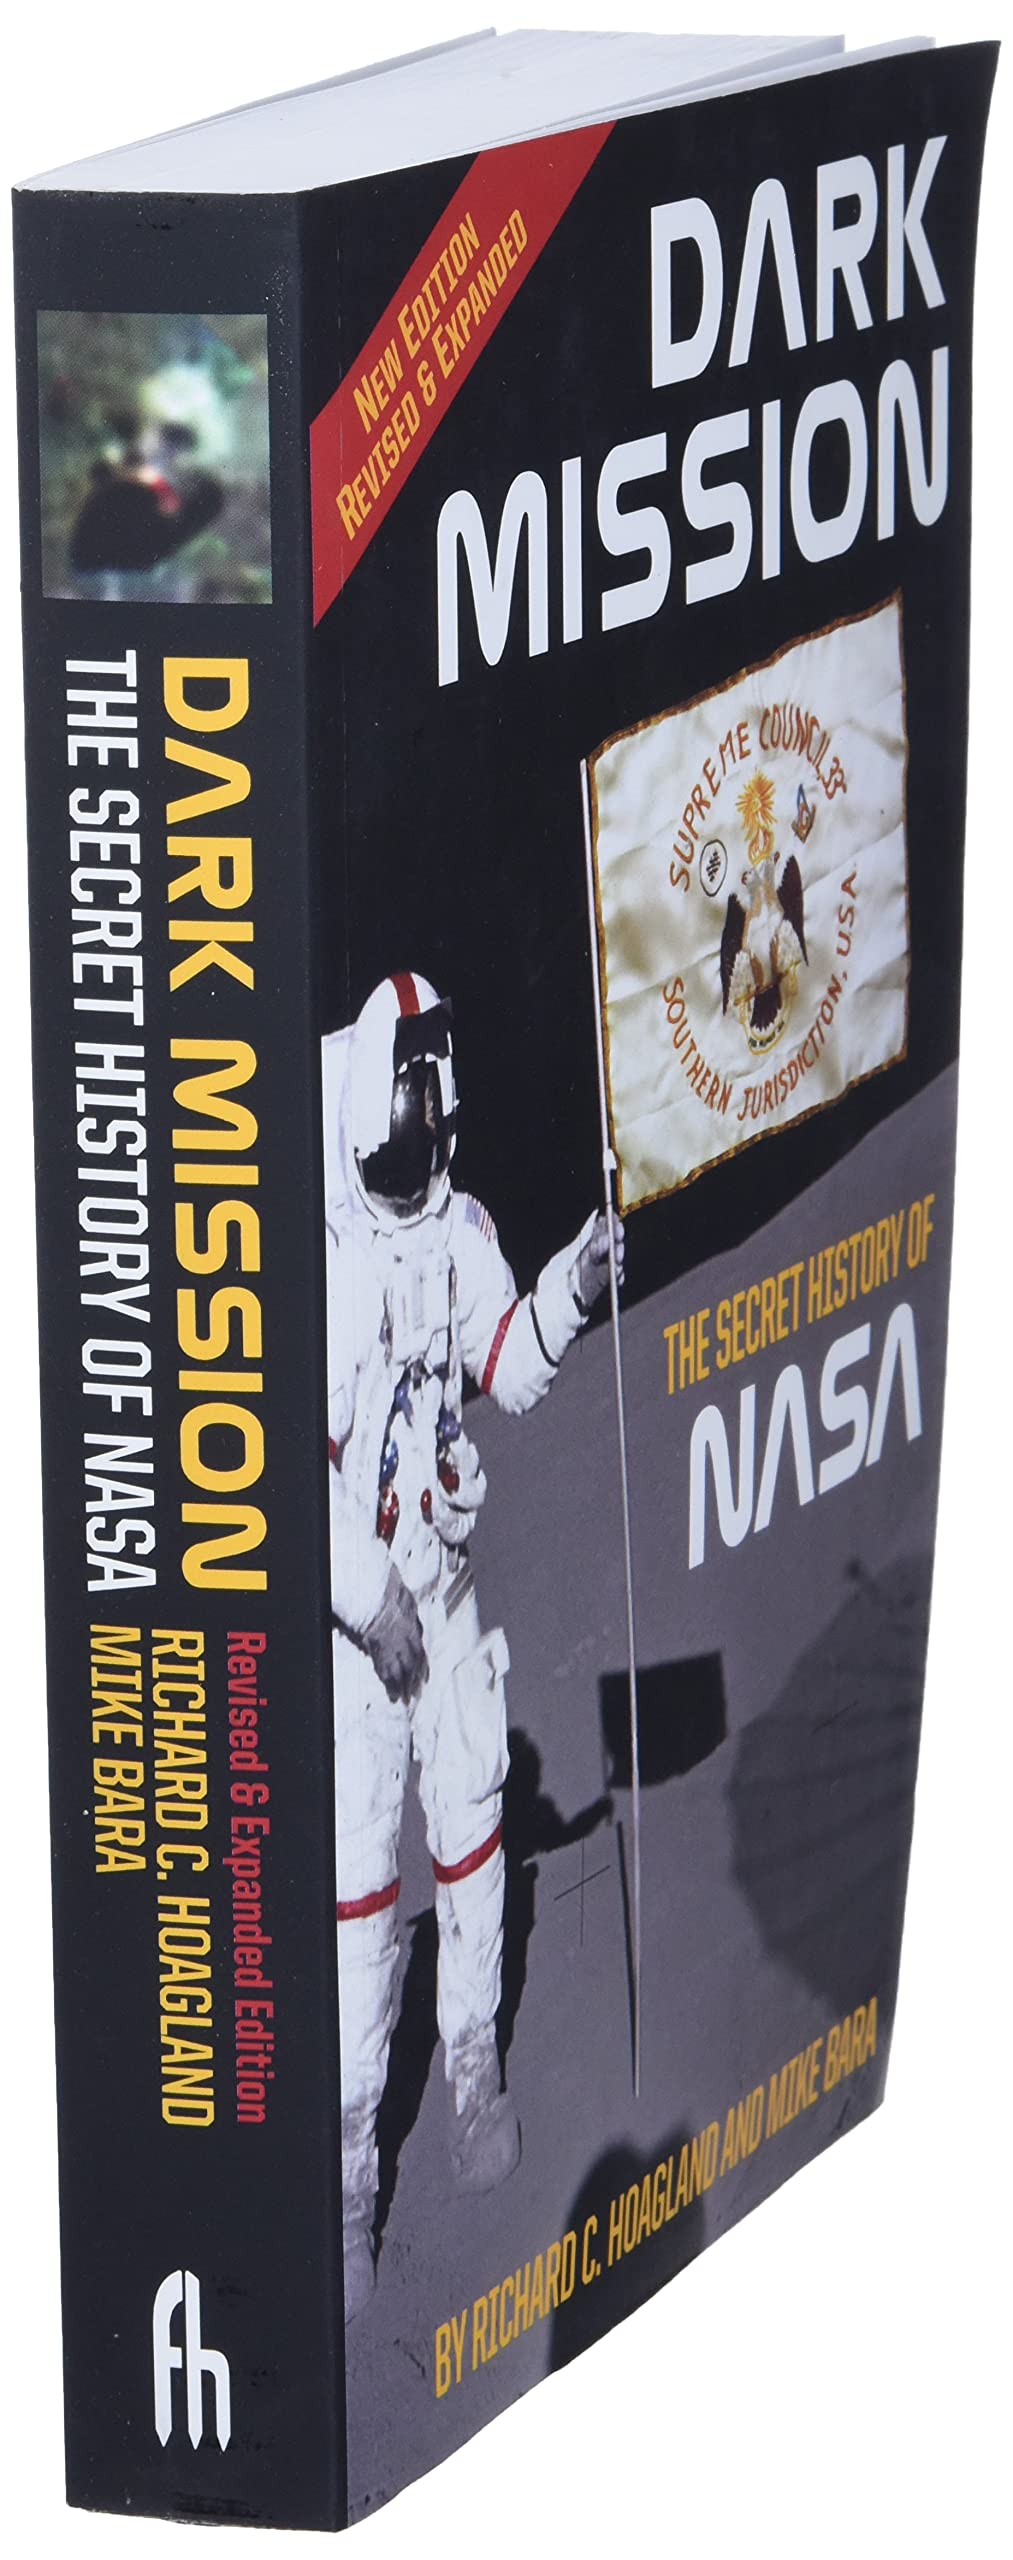 Dark Mission: Secret History of NASA - Third Eye